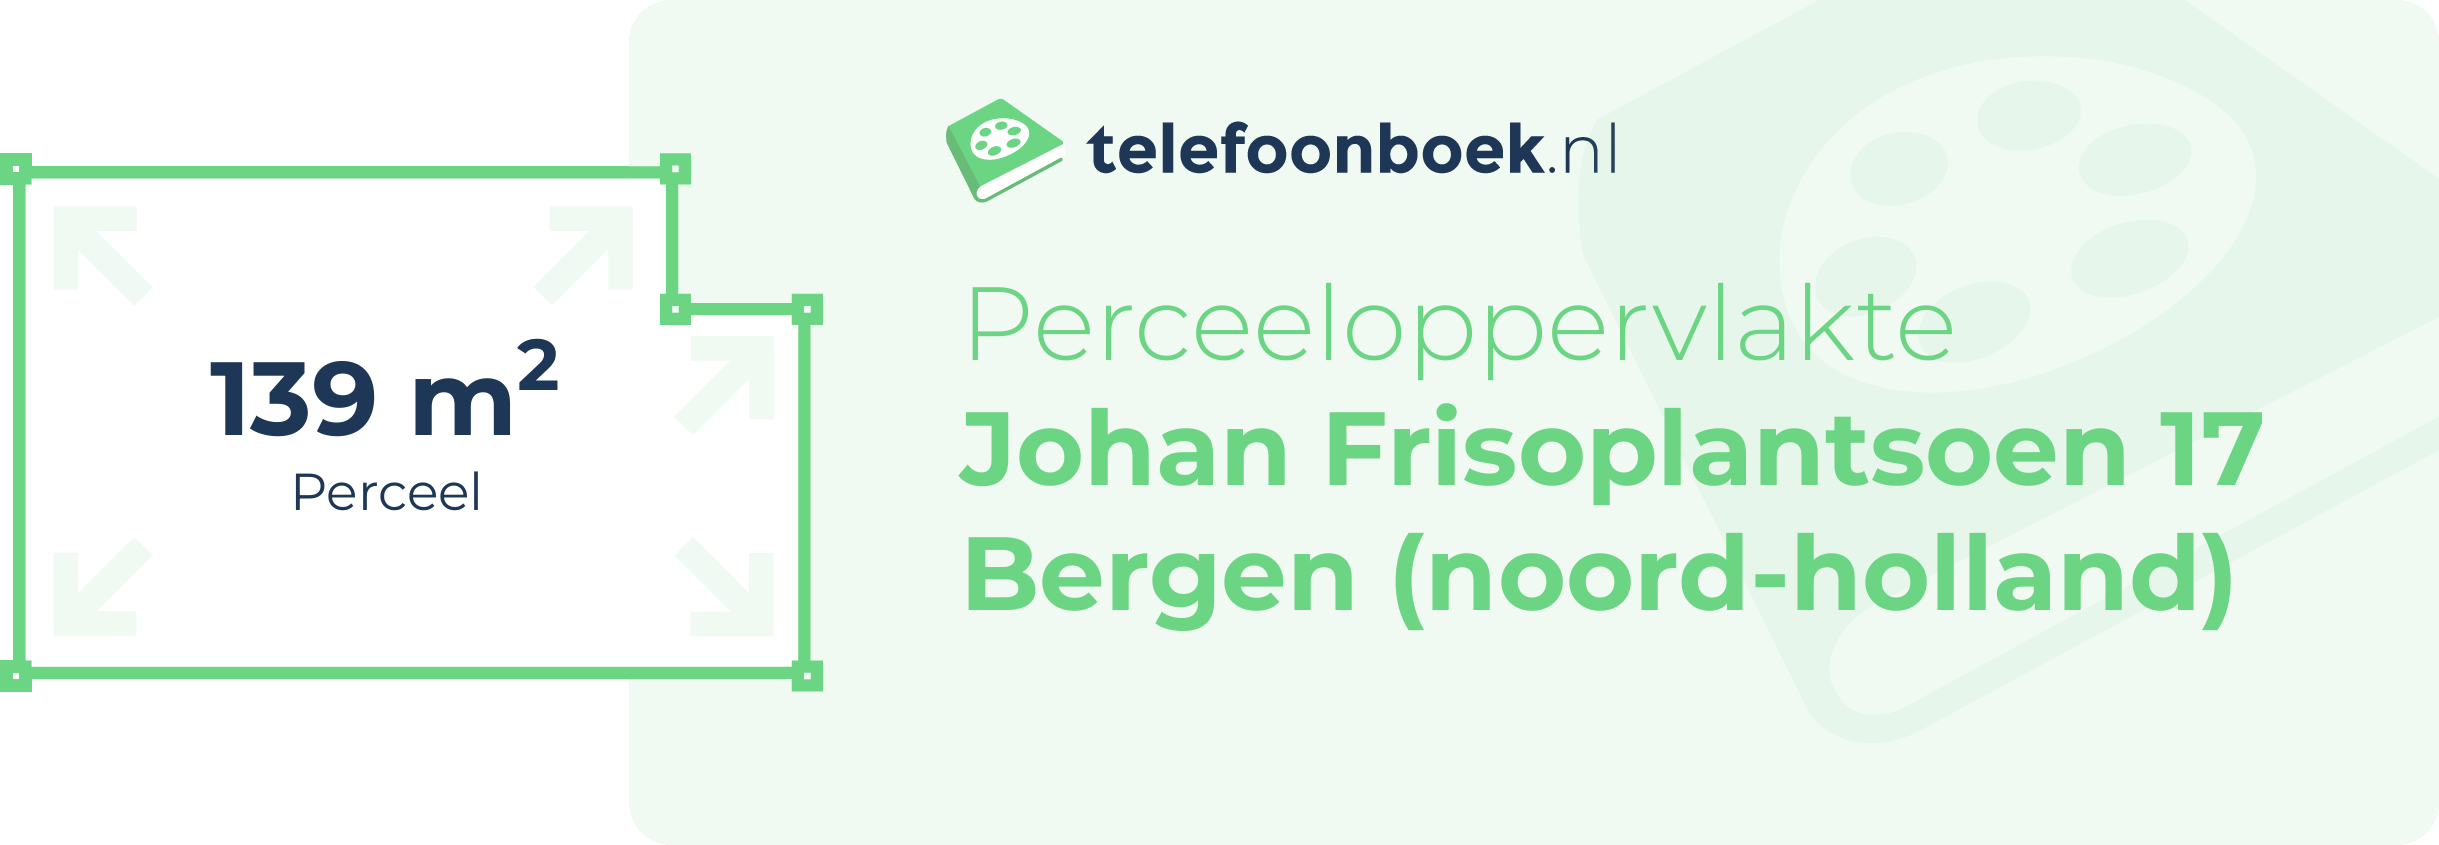 Perceeloppervlakte Johan Frisoplantsoen 17 Bergen (Noord-Holland)